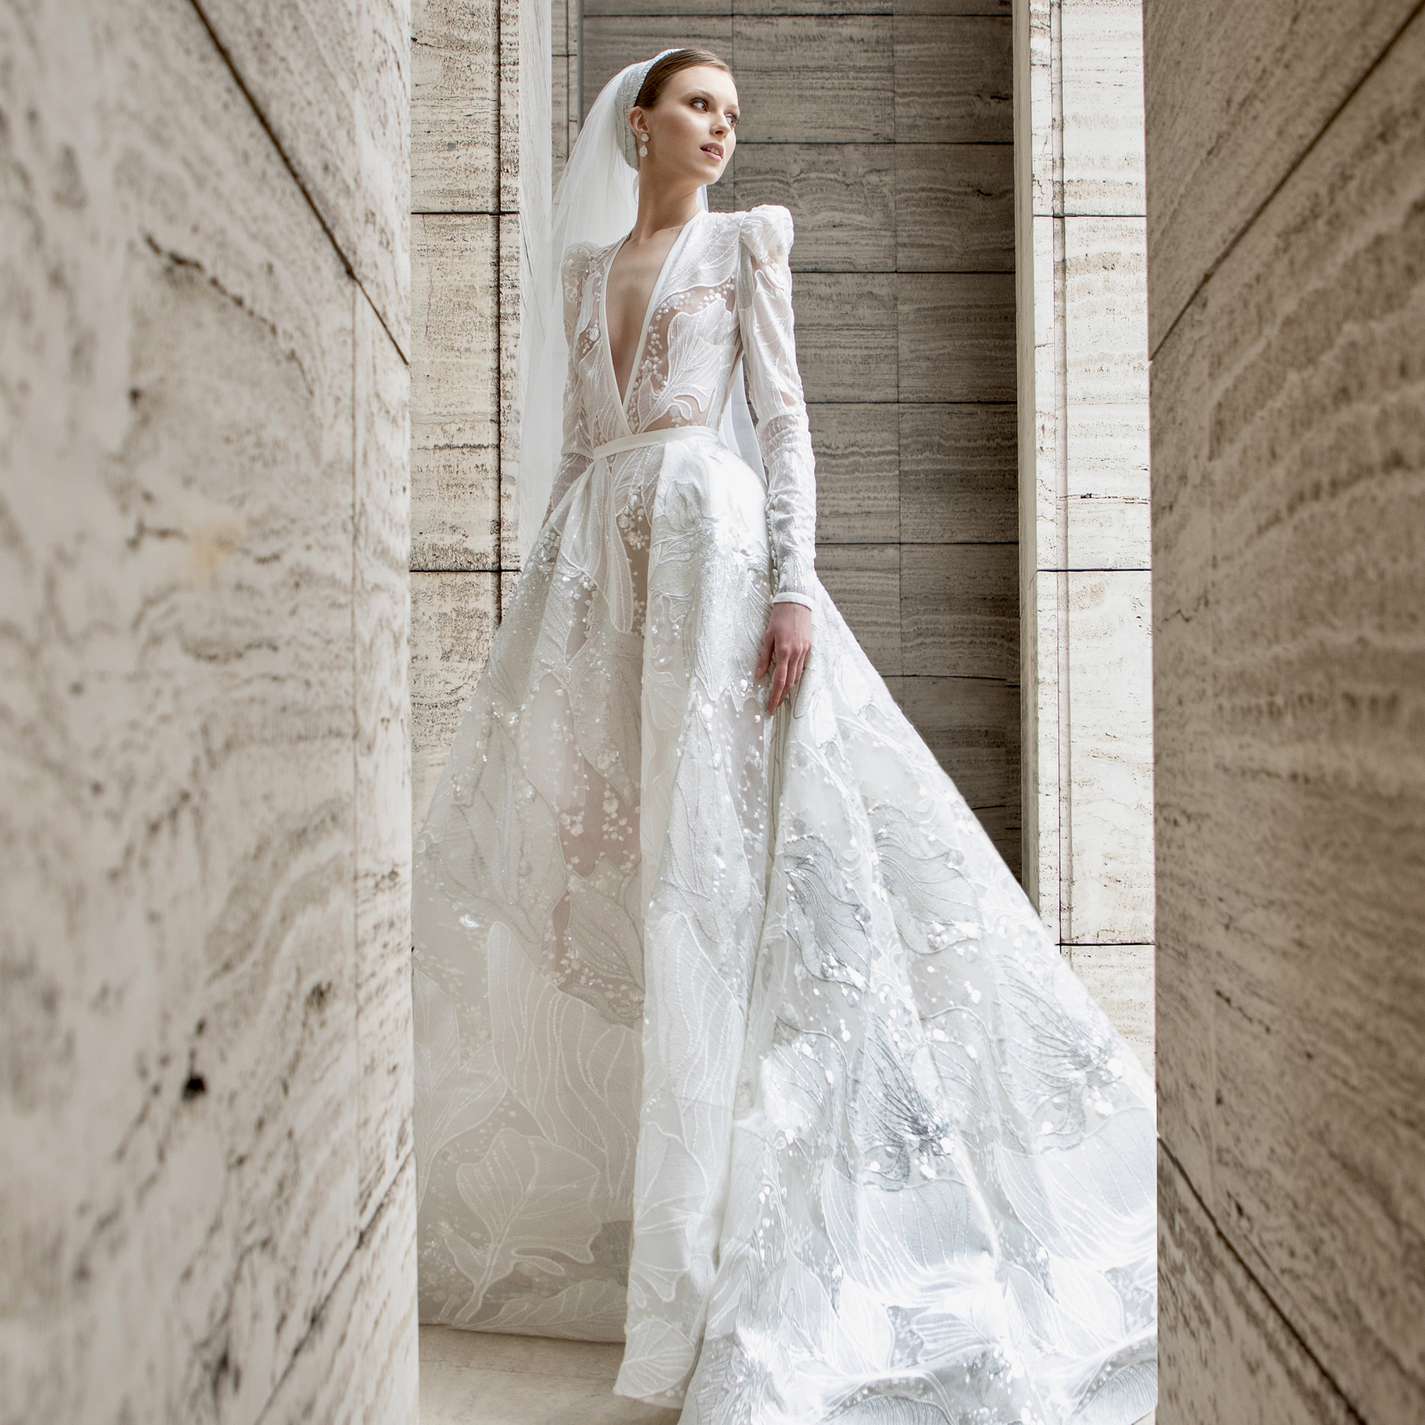 Elie Saab regency-era gown